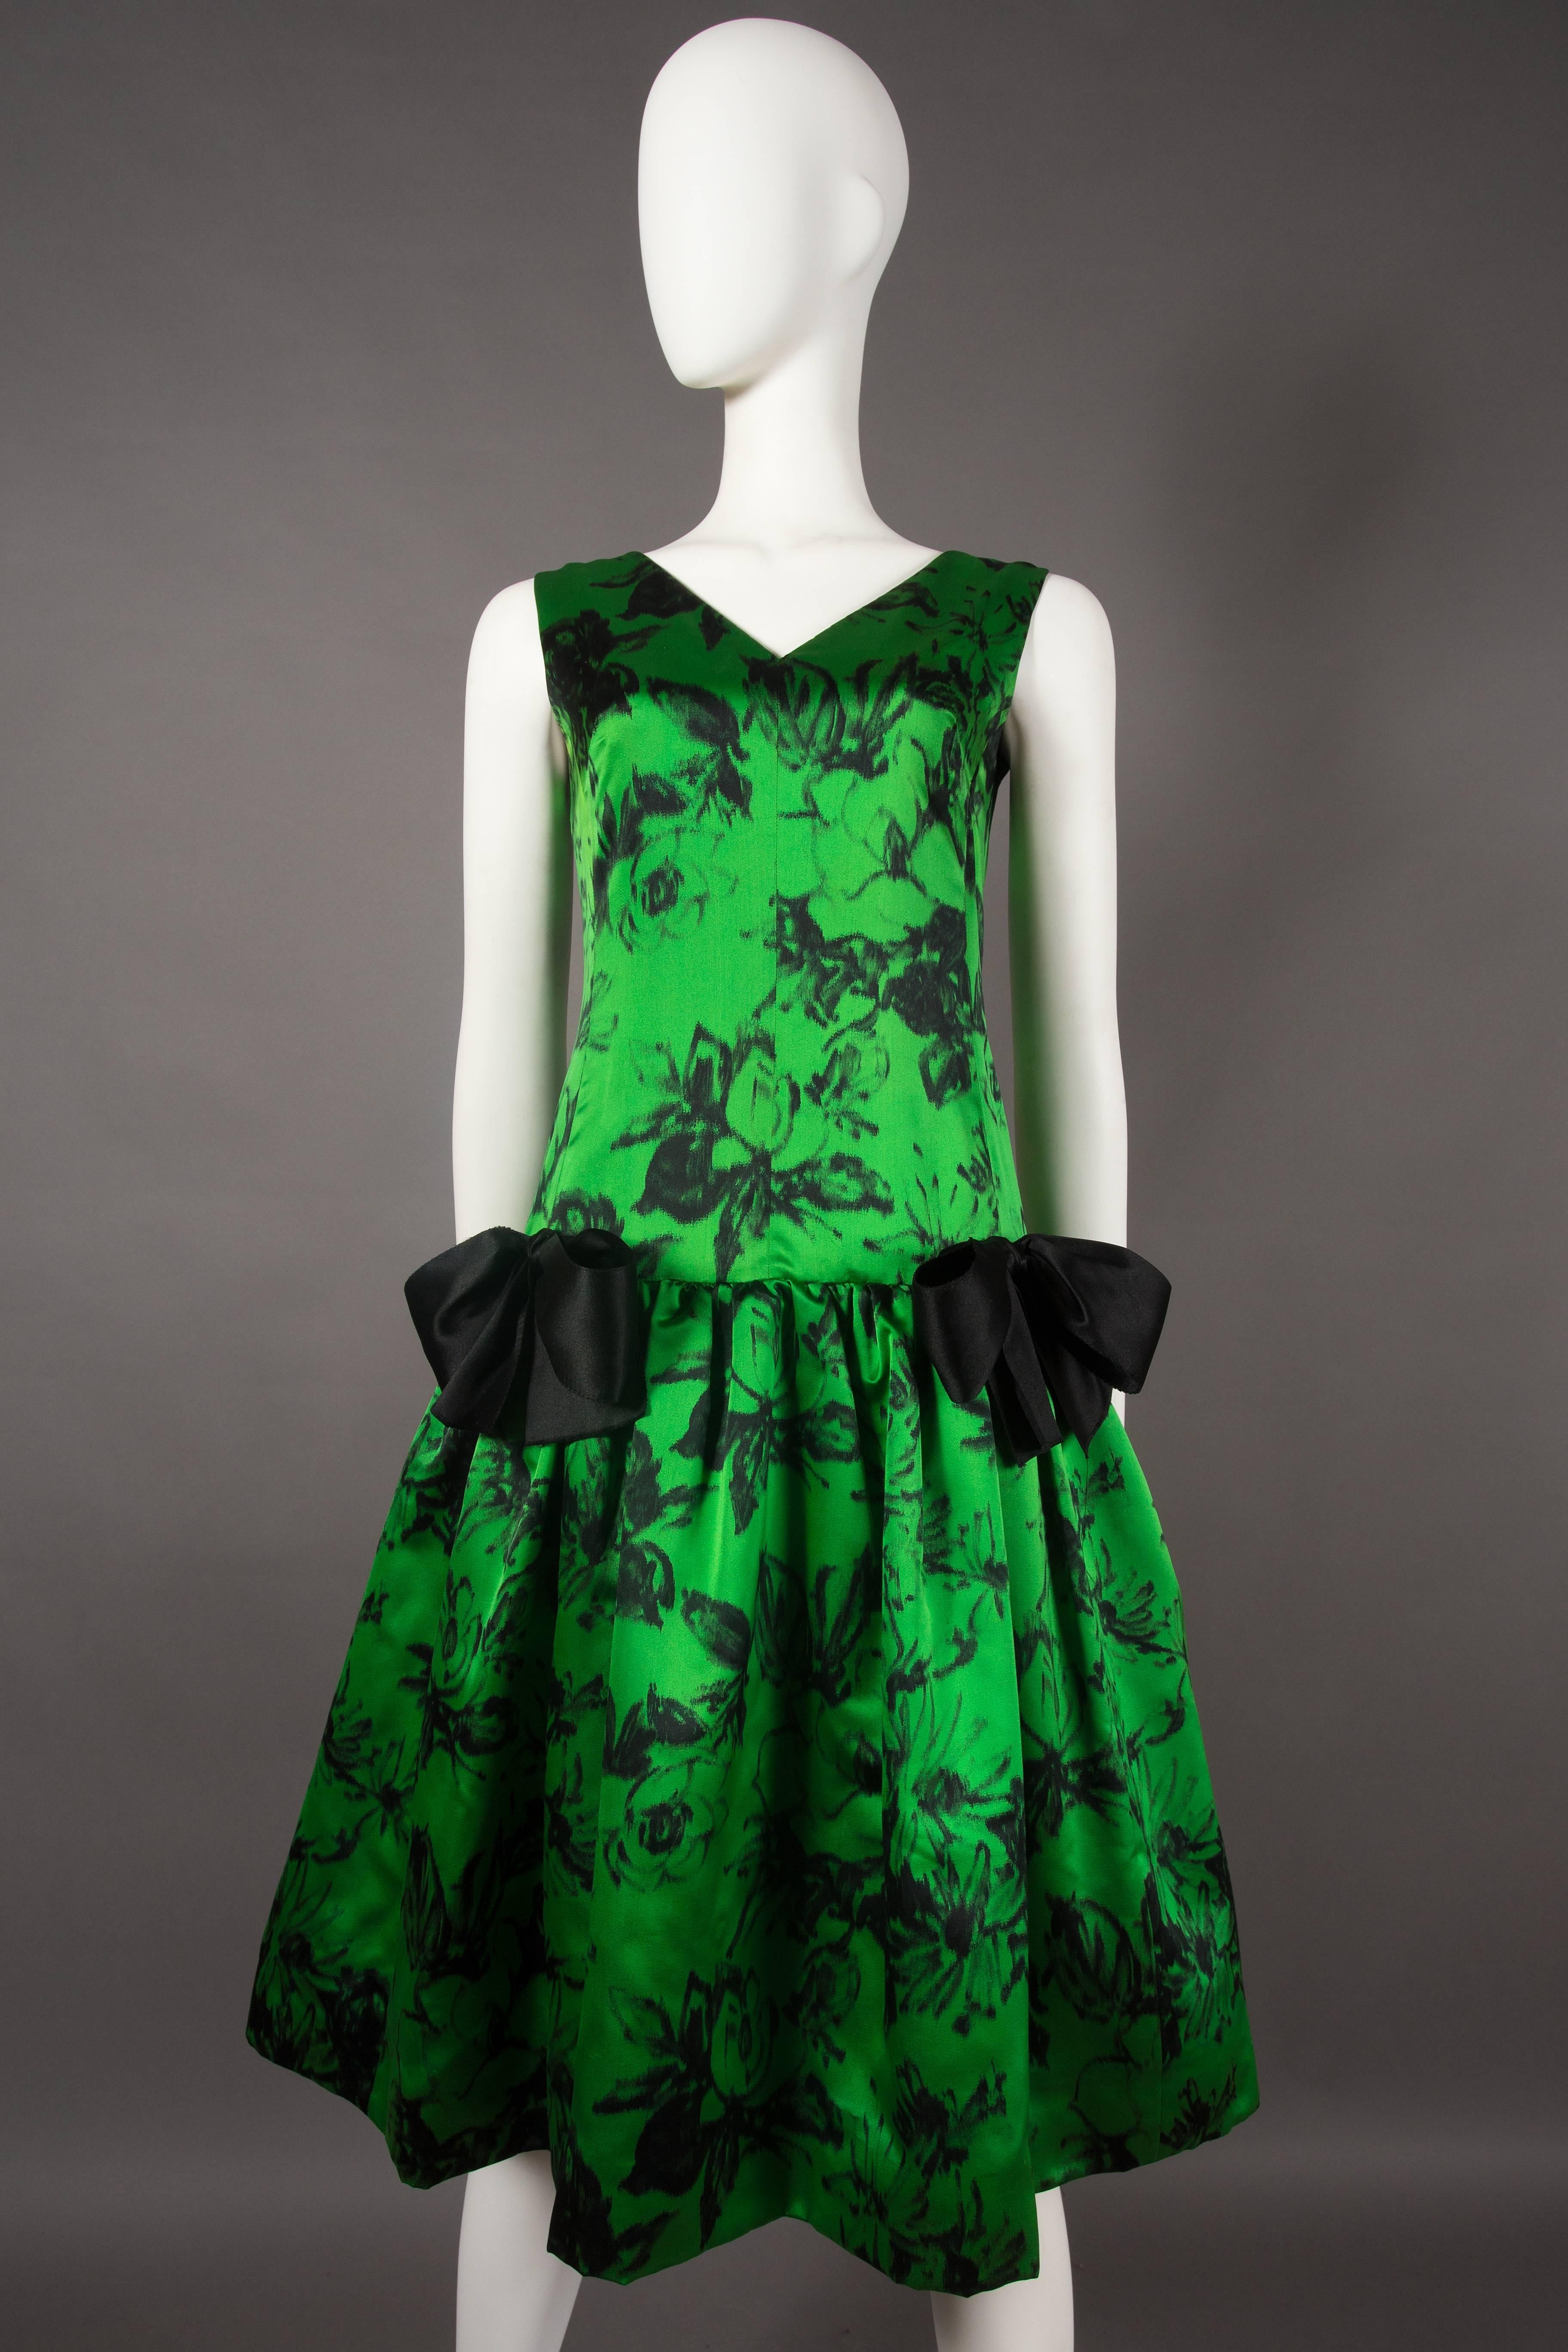 Wir präsentieren ein exquisites und äußerst seltenes Cocktailkleid von Paul Daunay, ein wahrer Schatz aus der Zeit um 1952-57. Dieses raffinierte Kleid aus feinem Seidenstoff mit abstraktem Blumendruck strahlt zeitlose Eleganz und Raffinesse